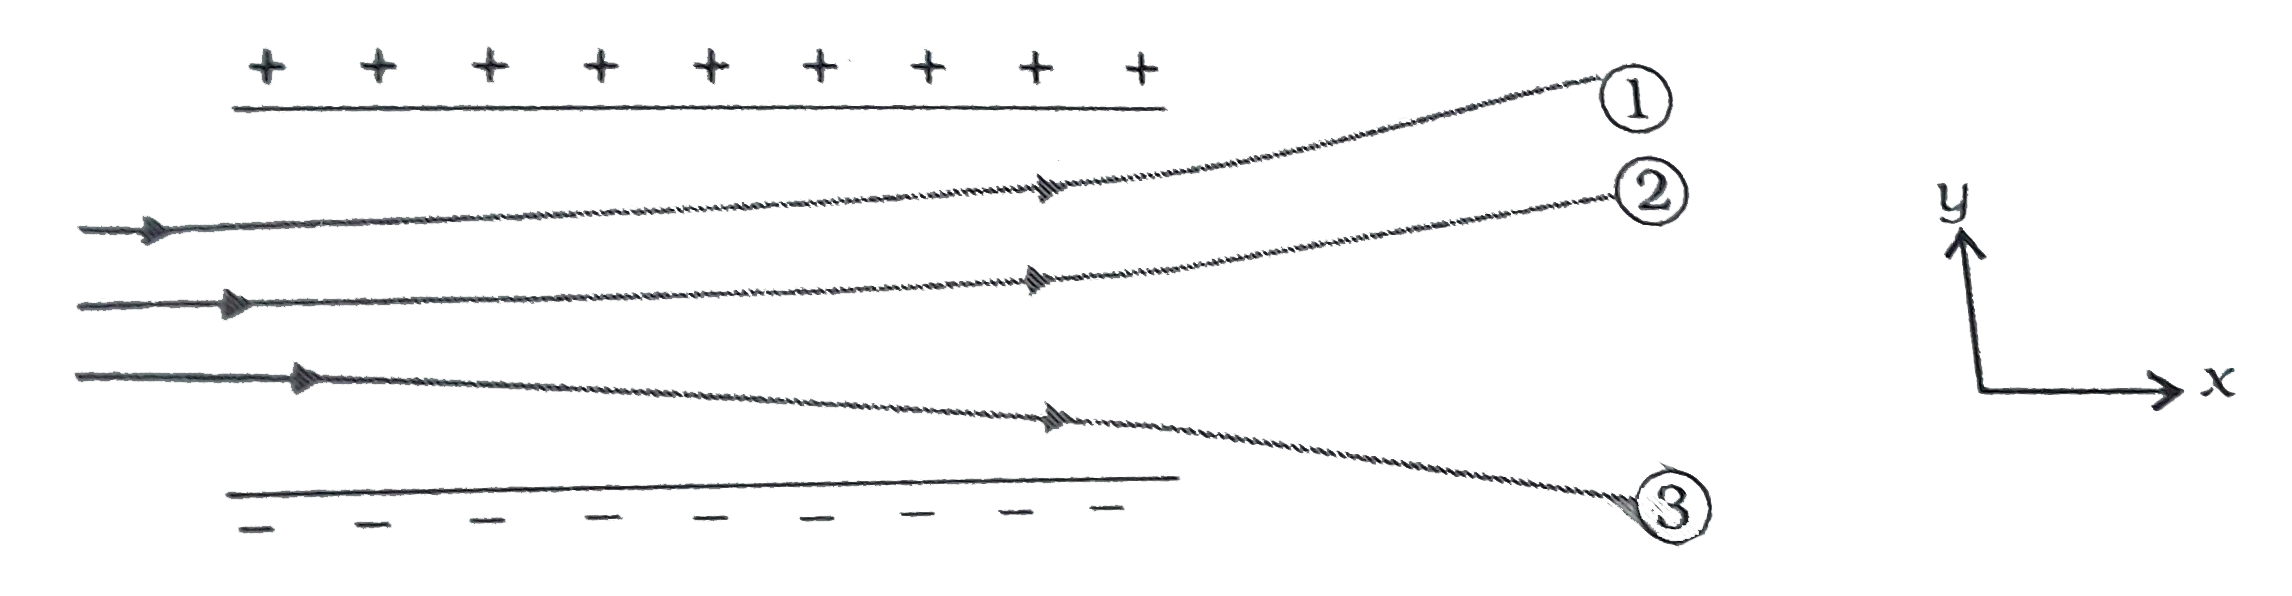 चित्र में किसी एकसमान स्थिरविद्युत क्षेत्र में तीन आवेशित कर्णो में पथचिन्ह (tracks) दर्शाए गए है। तीनो आवेशों के चिन्ह लिखित है। इनमे से किस कर्ण का आवेश-संहित अनुपात (q/m)  अधितकतम  है ?